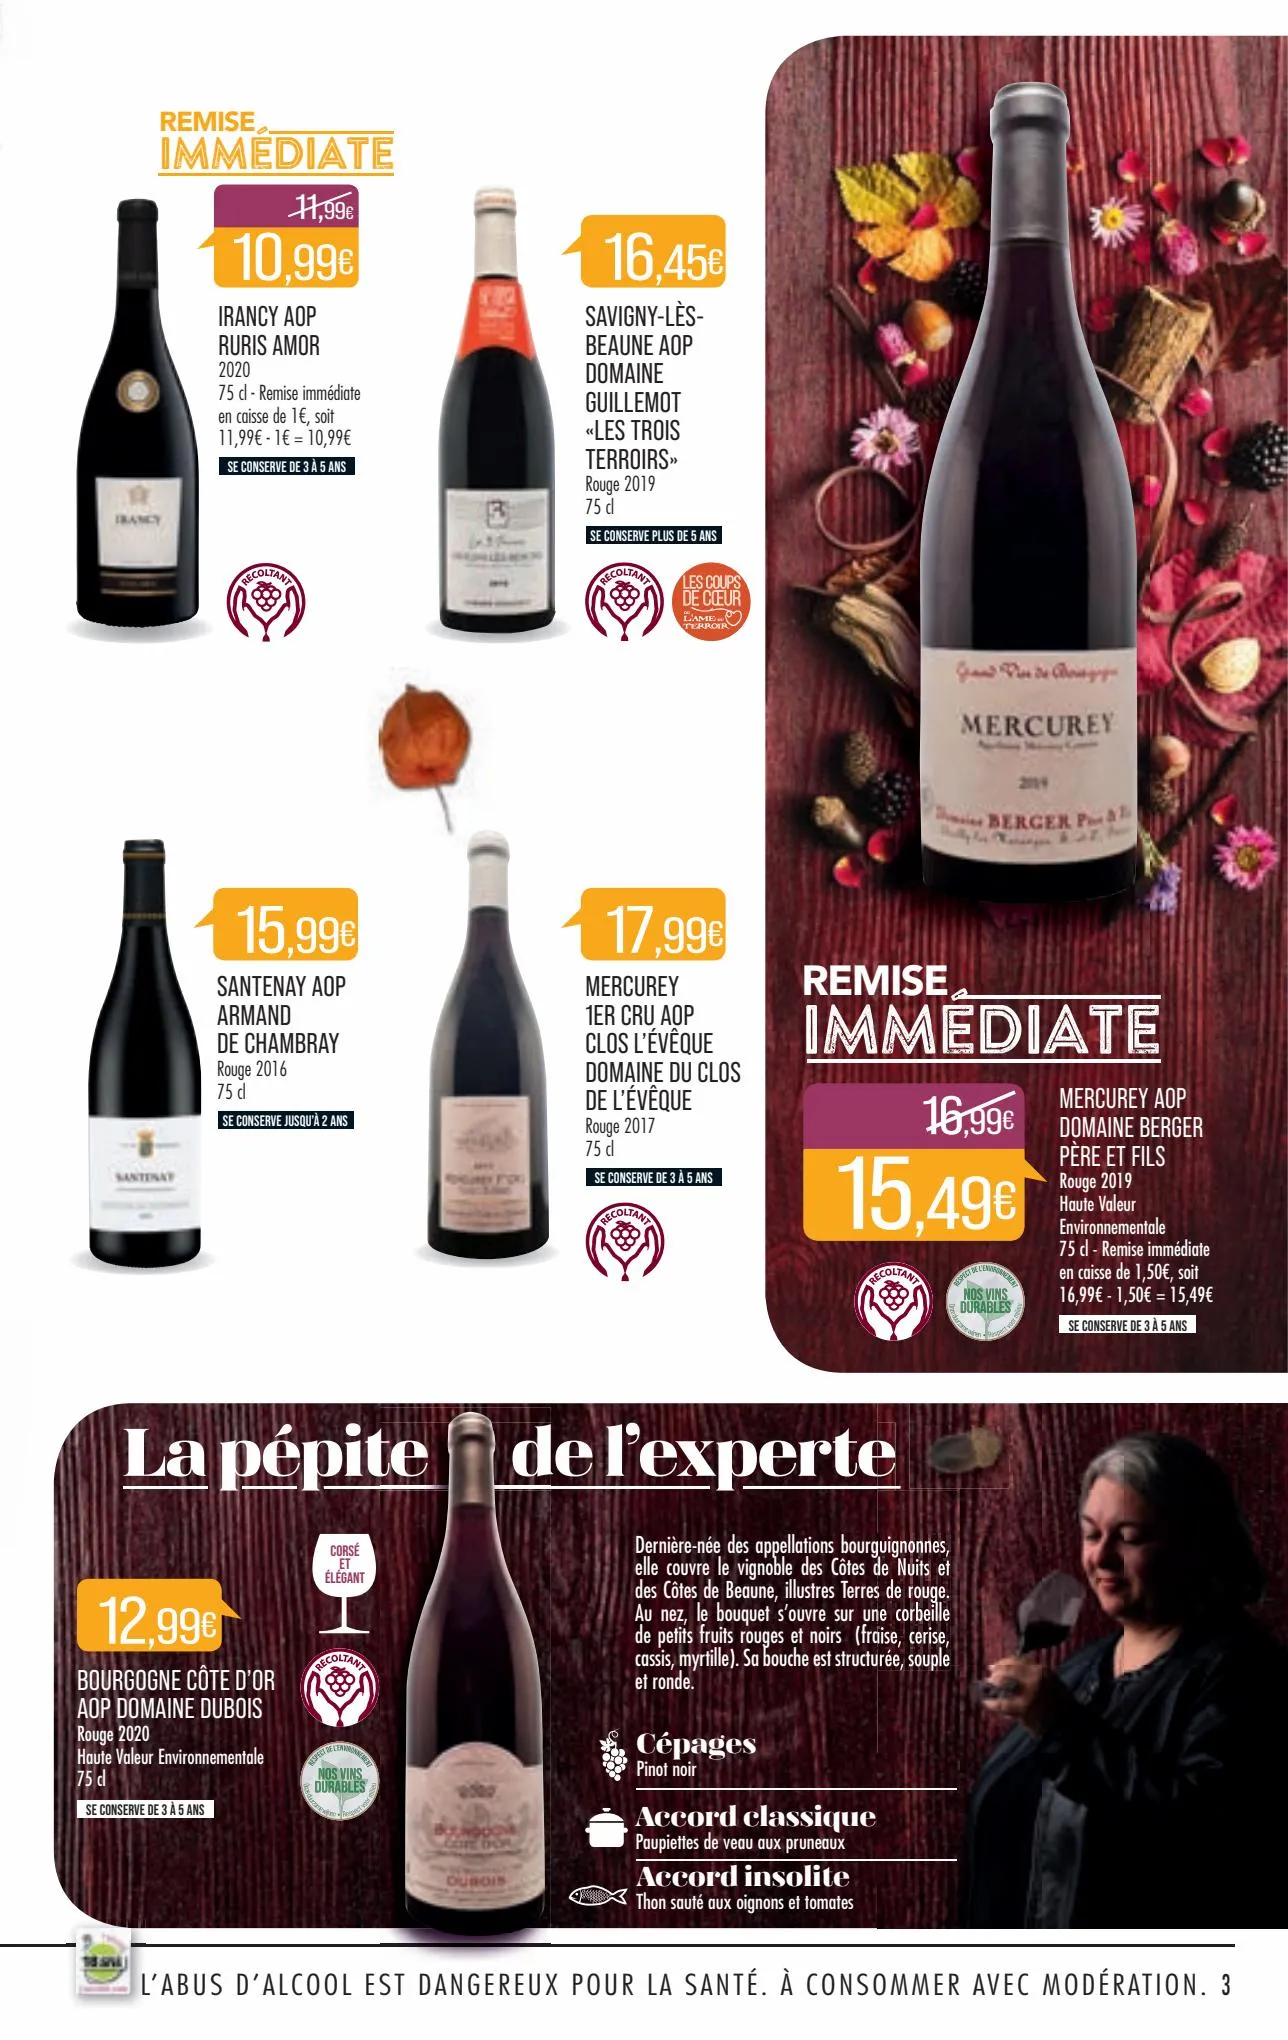 Catalogue Foire aux vins, page 00003